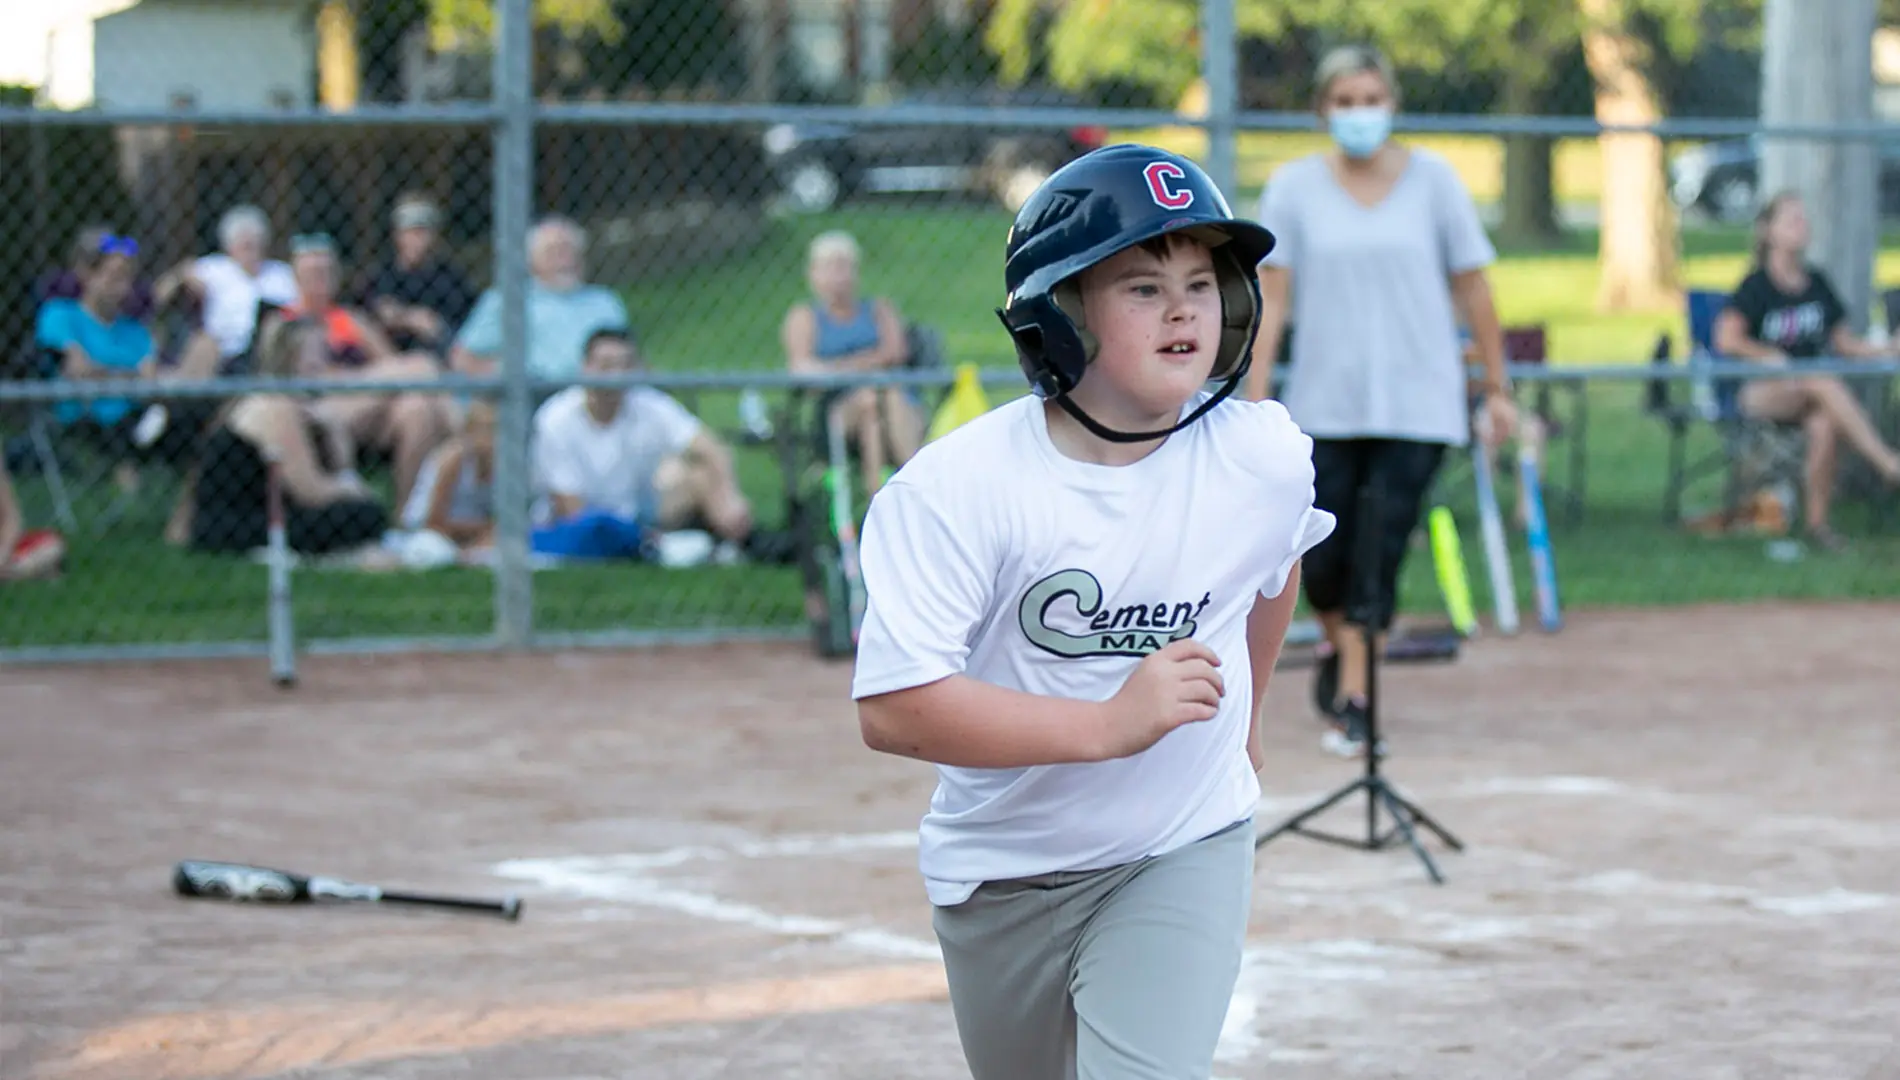 A child playing baseball